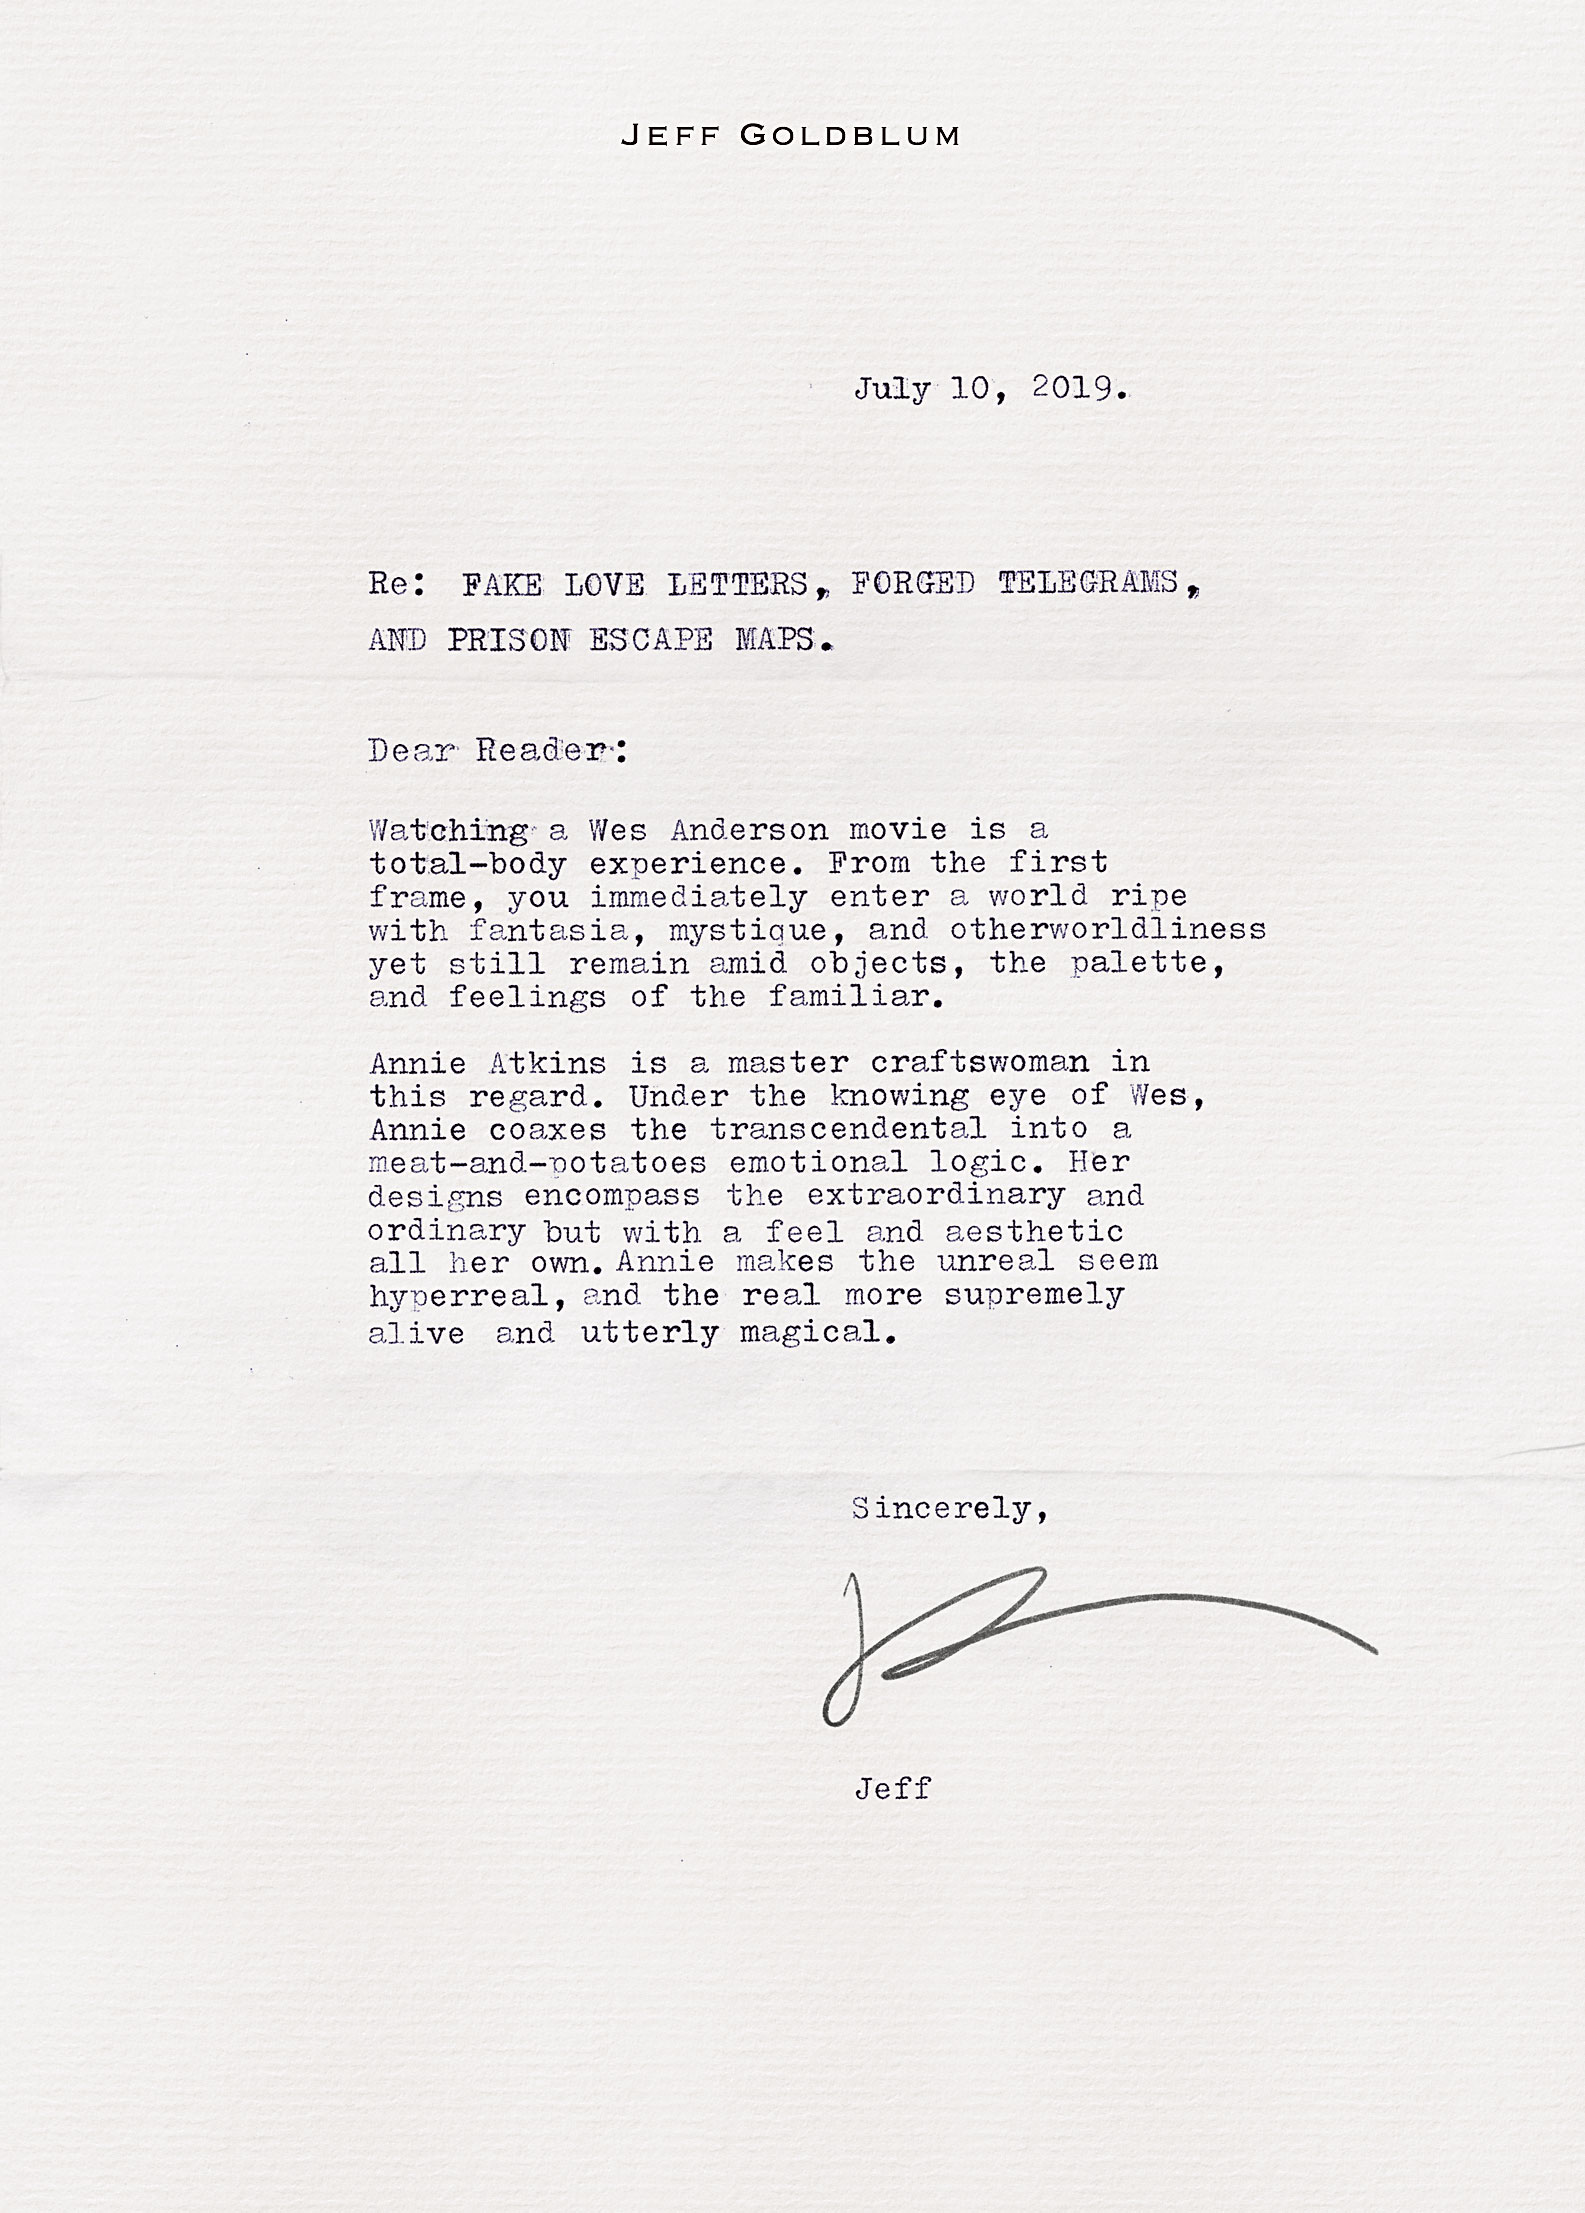 A closer look at Jeff Goldblum's letter